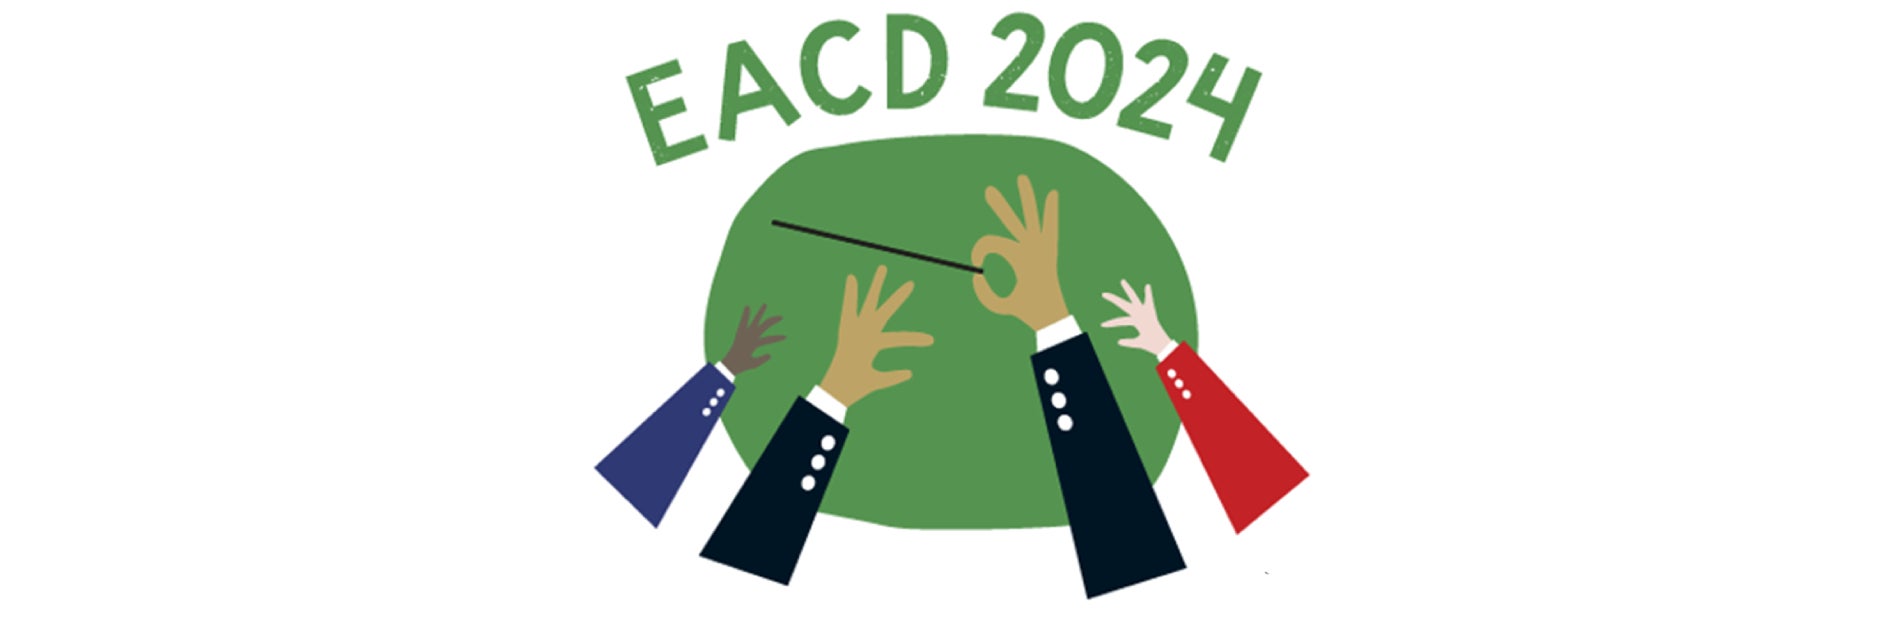 EACD 2024: Une symphonie où les soins et le patient se rejoignent.